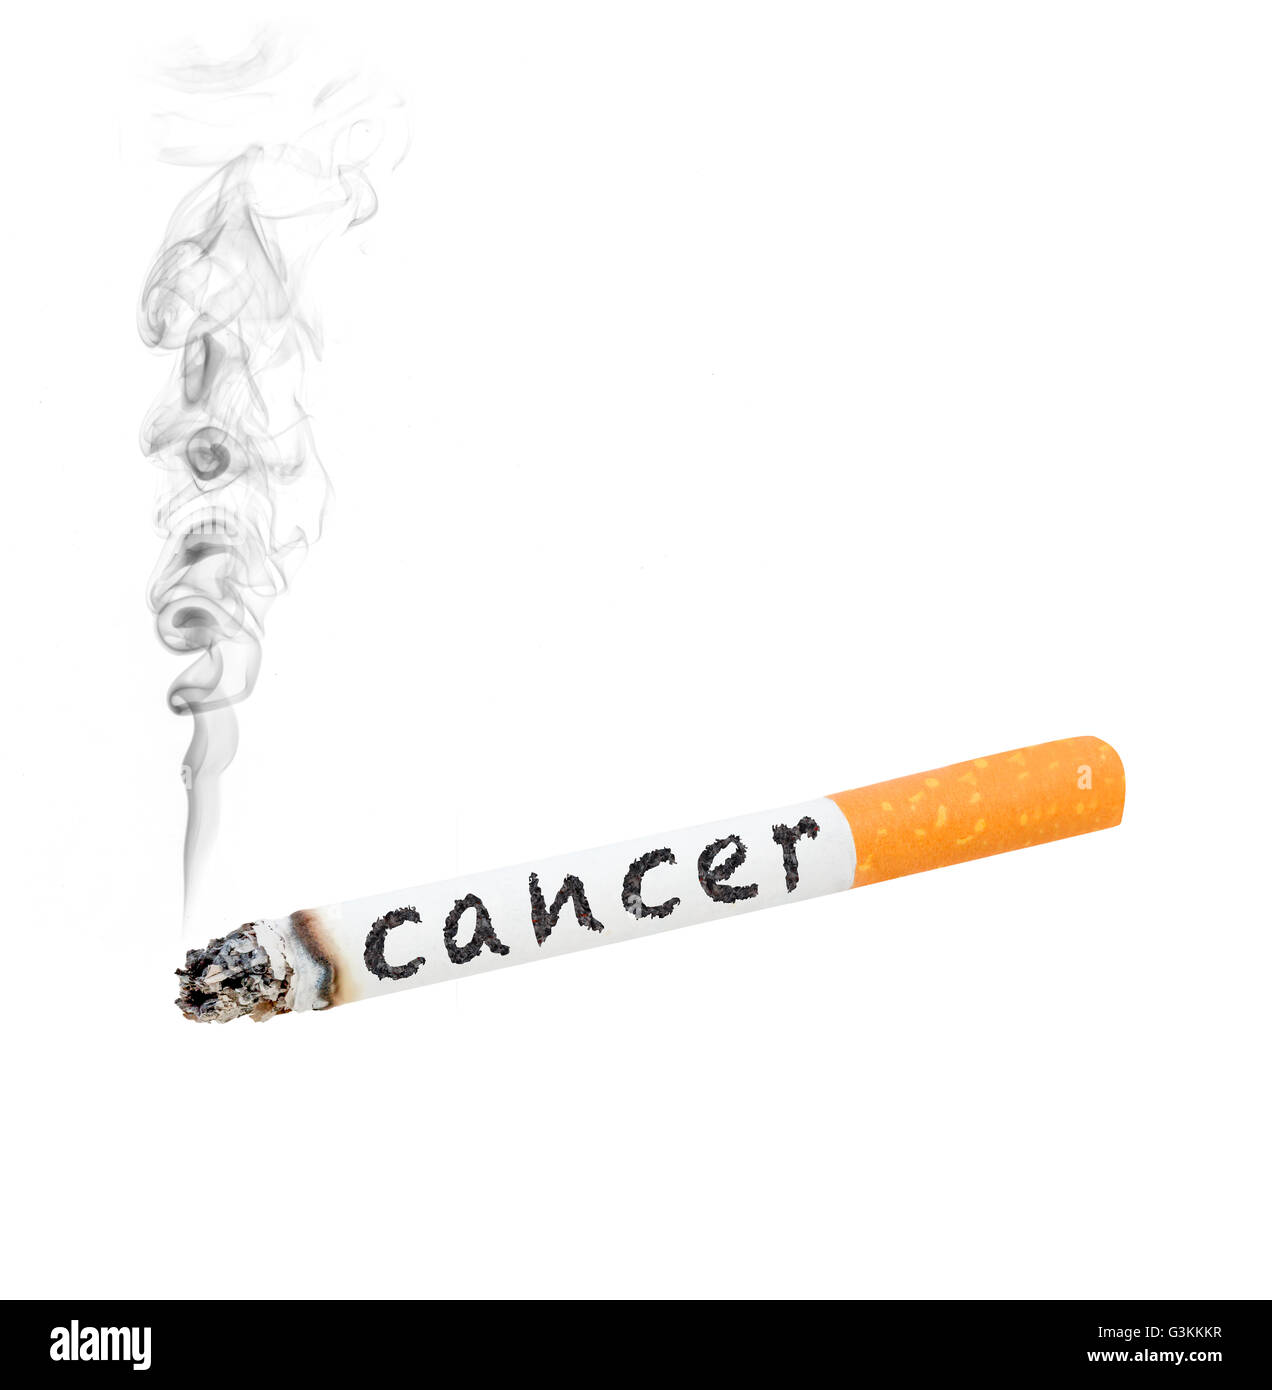 Eine brennende Zigarette mit dem Wort "Krebs" auf der Seite Stockfoto